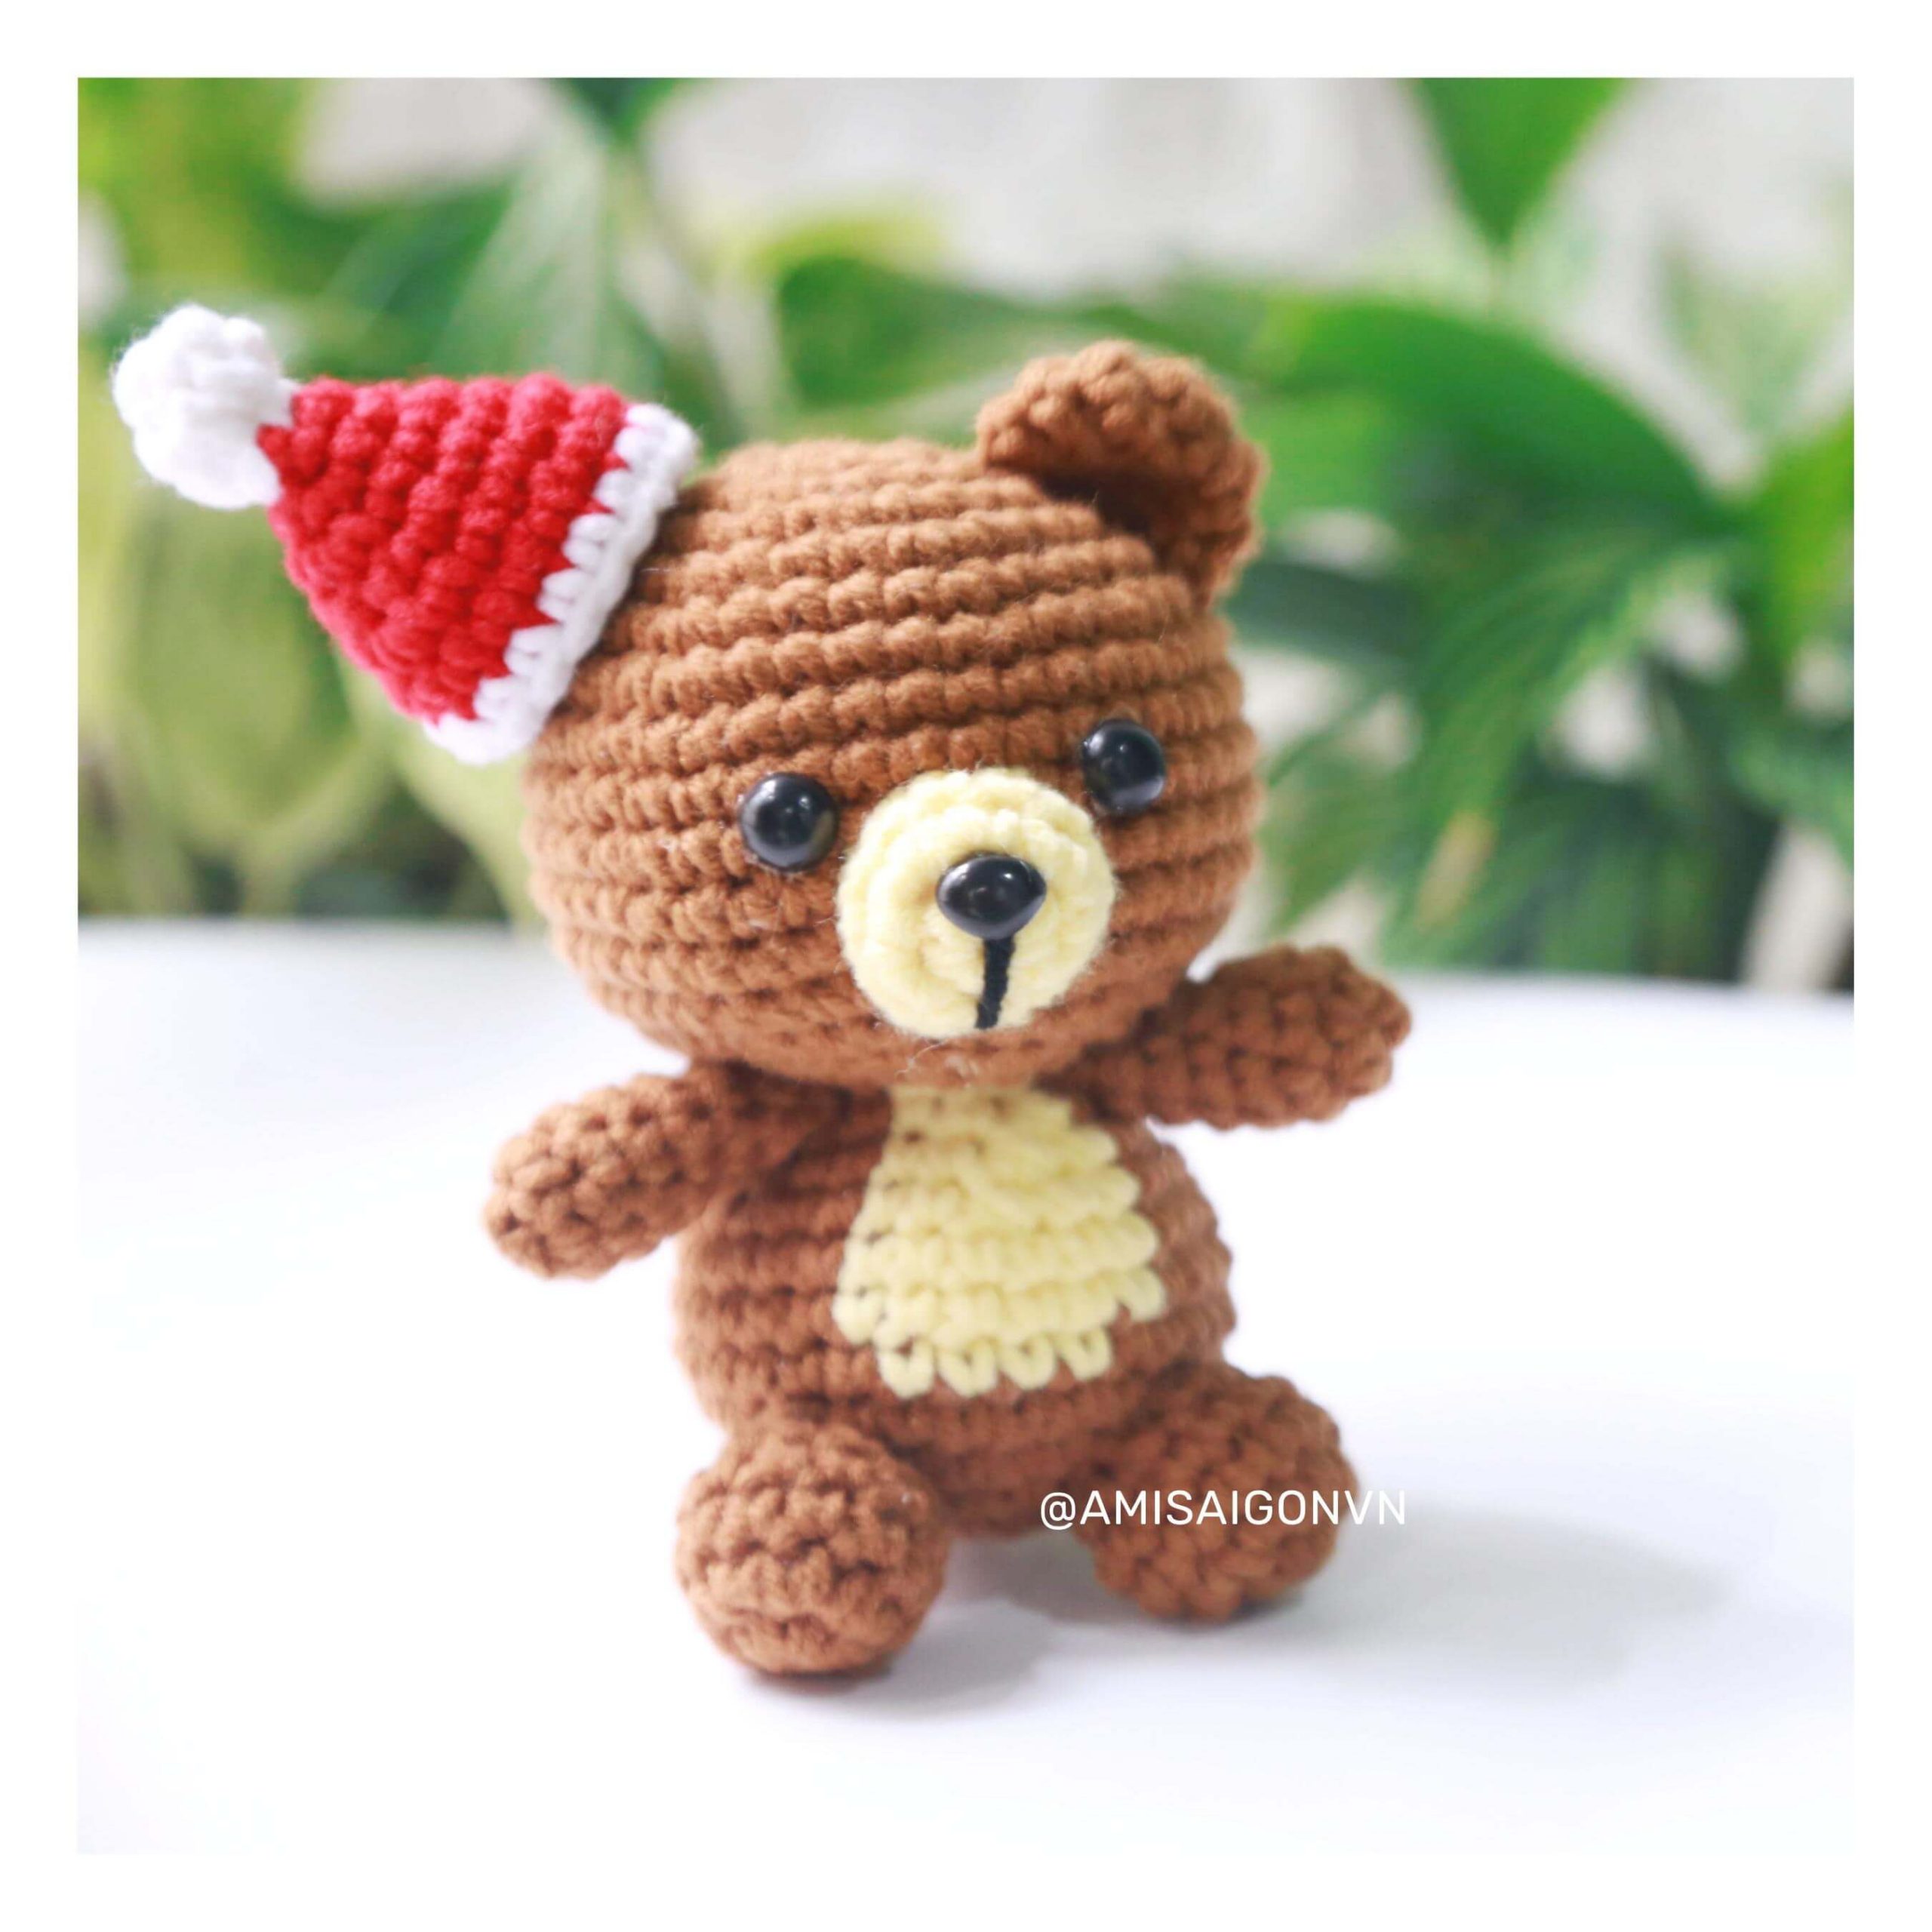 teddy-bear-amigurumi-crochet-pattern-by-amisaigo (1)